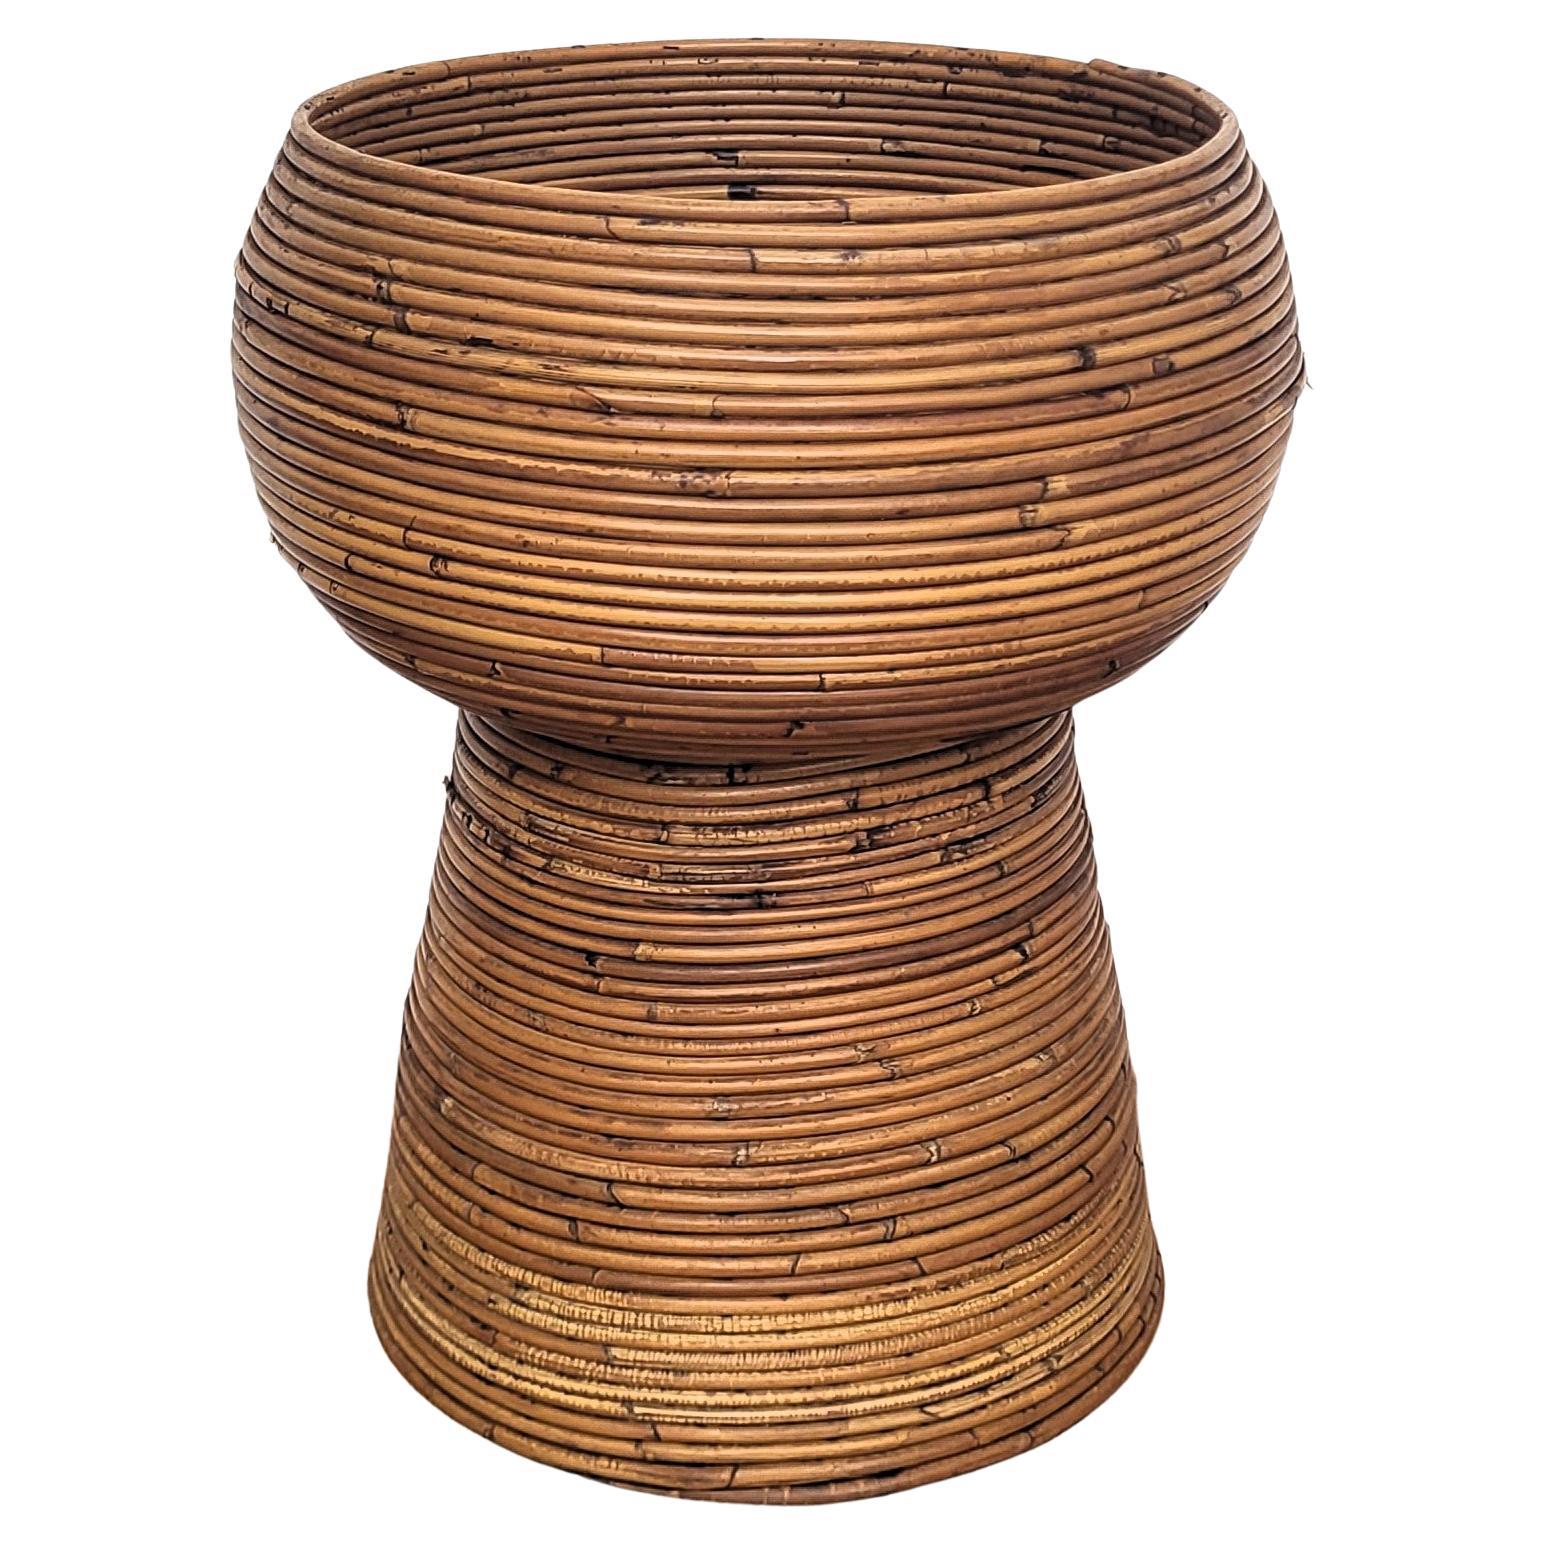 Böhmische organische Vase aus Bambus und Rattan, italienische Designerin, 1960er Jahre